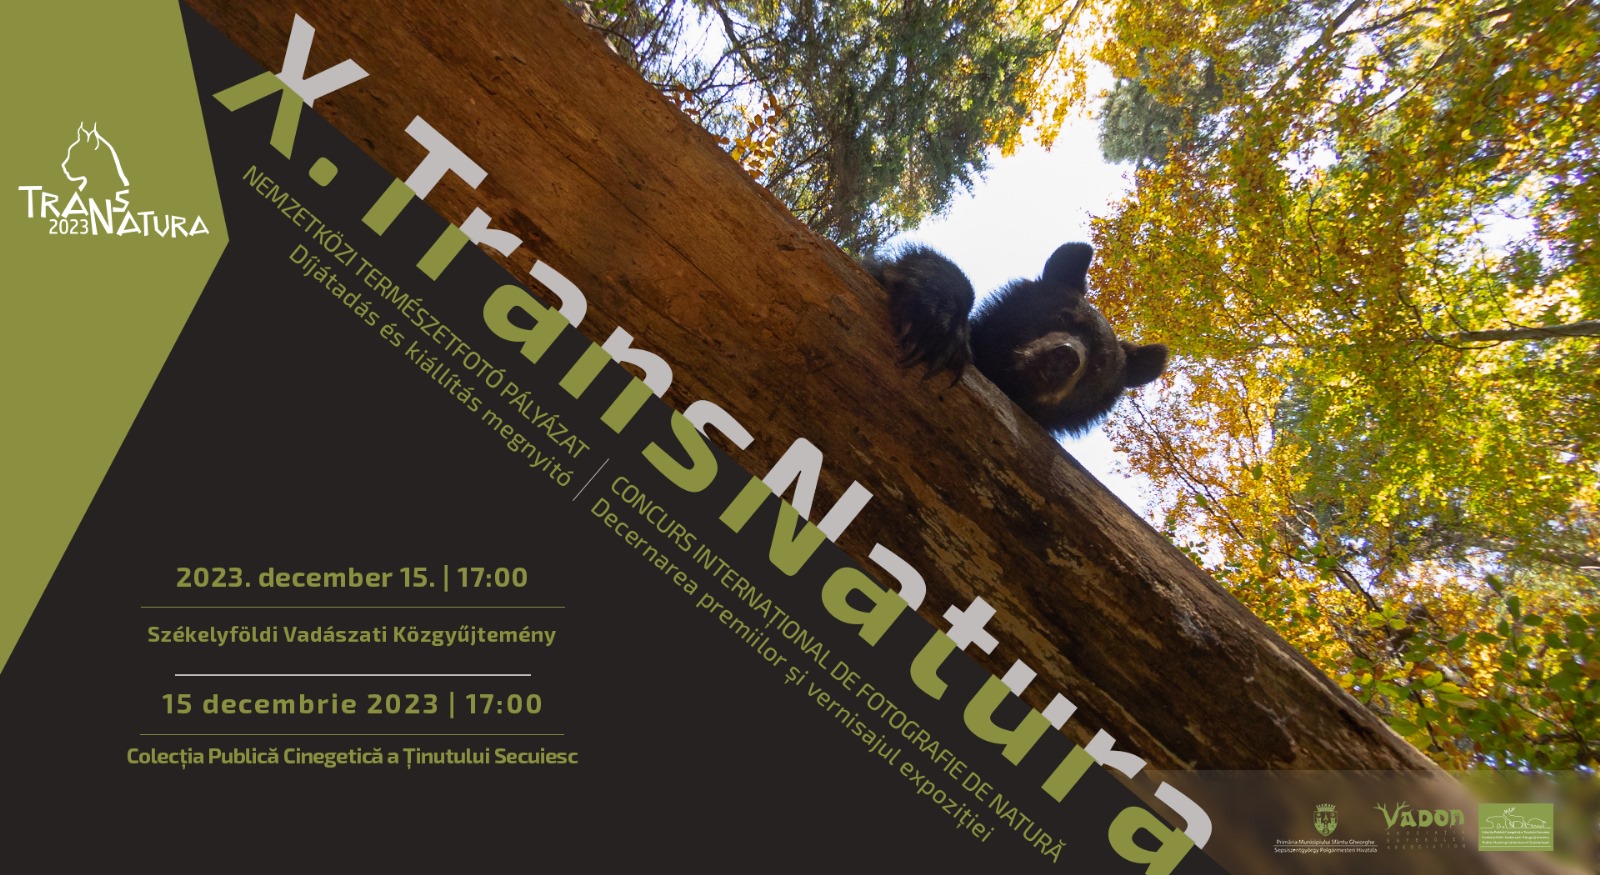 X. TransNatura Nemzetközi Természetfotó pályázat díjátadóval egybekötött kiállítása